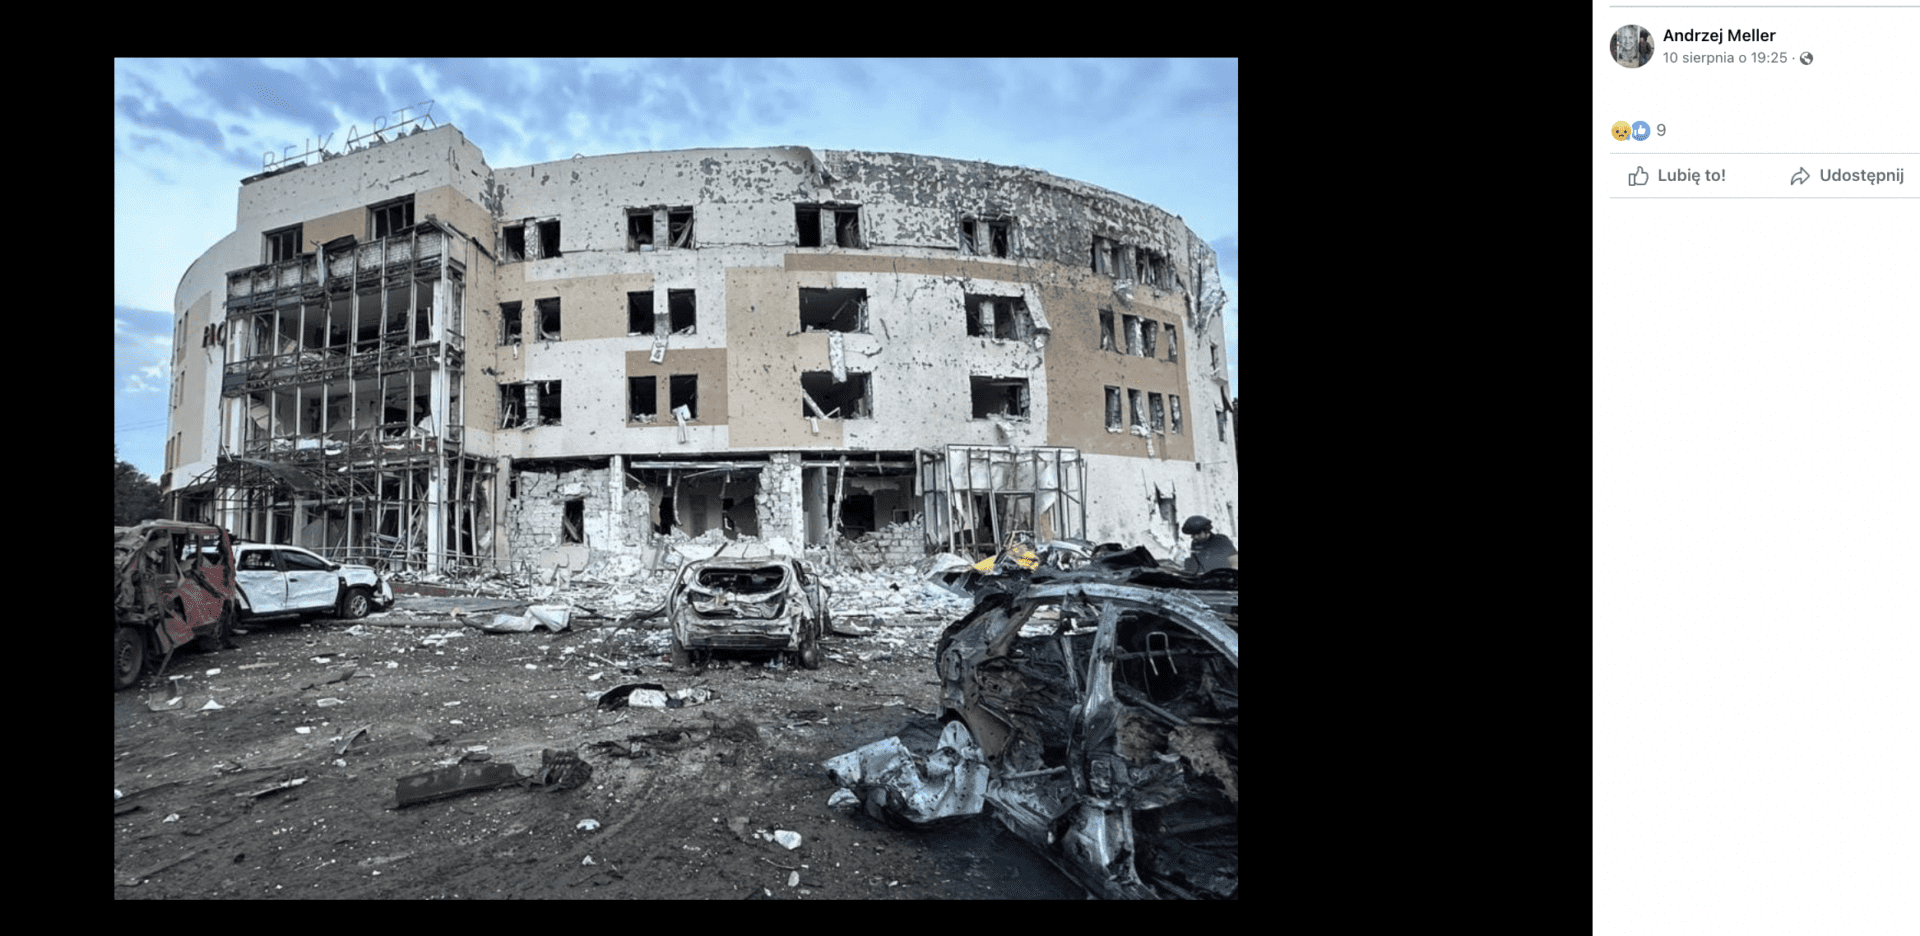 Zrzut ekranu posta, który udostępnił Andrzej Meller. Widoczny jest zniszczony budynek. Przed nim stoją zniszczone samochody.